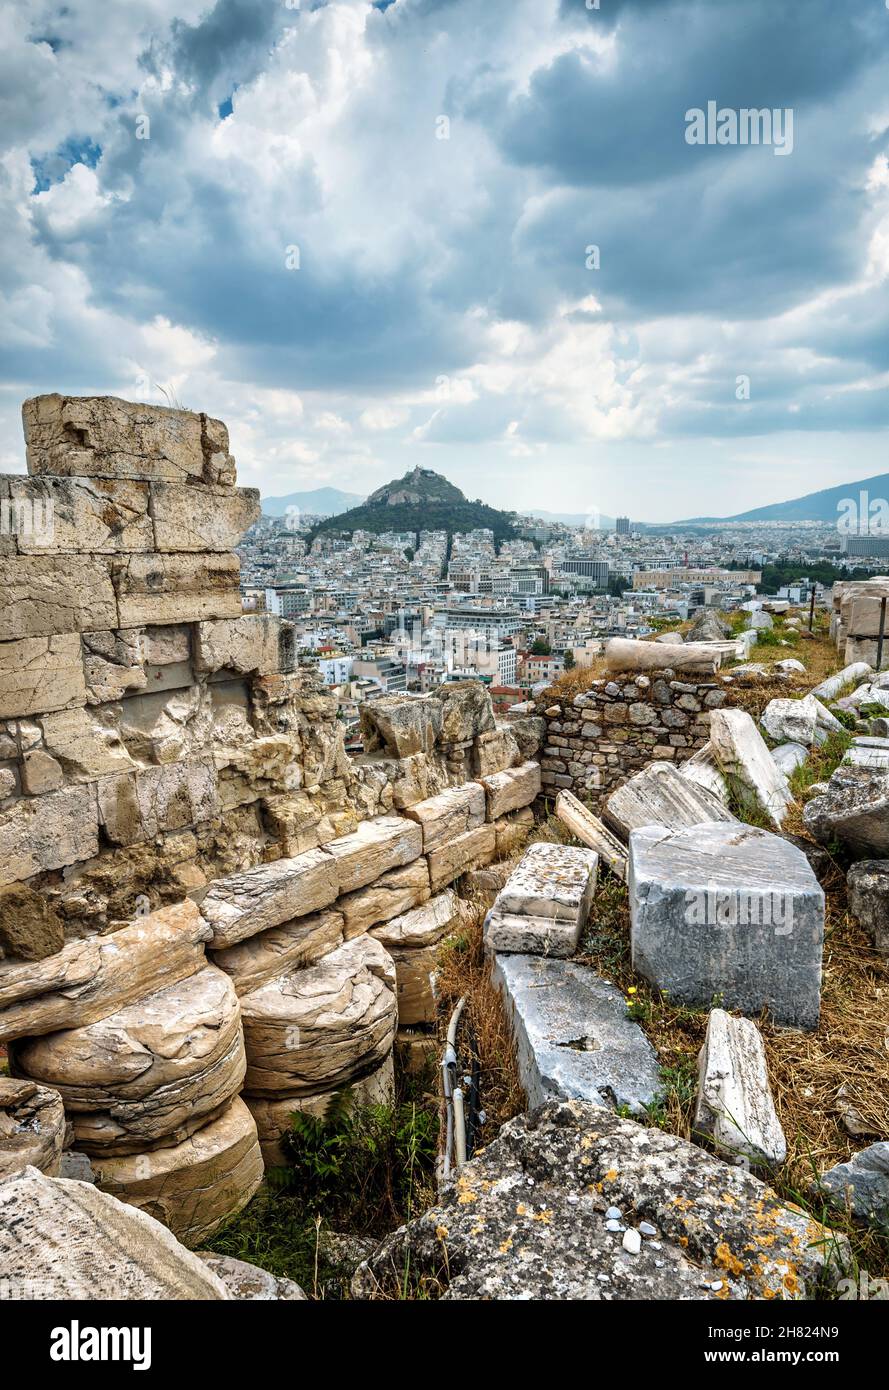 Antiche rovine greche sulla cima dell'Acropoli, Atene, Grecia. Vista spettacolare del Monte Lycabettus nel centro di Atene. Paesaggio urbano di Atene con tempeste Foto Stock